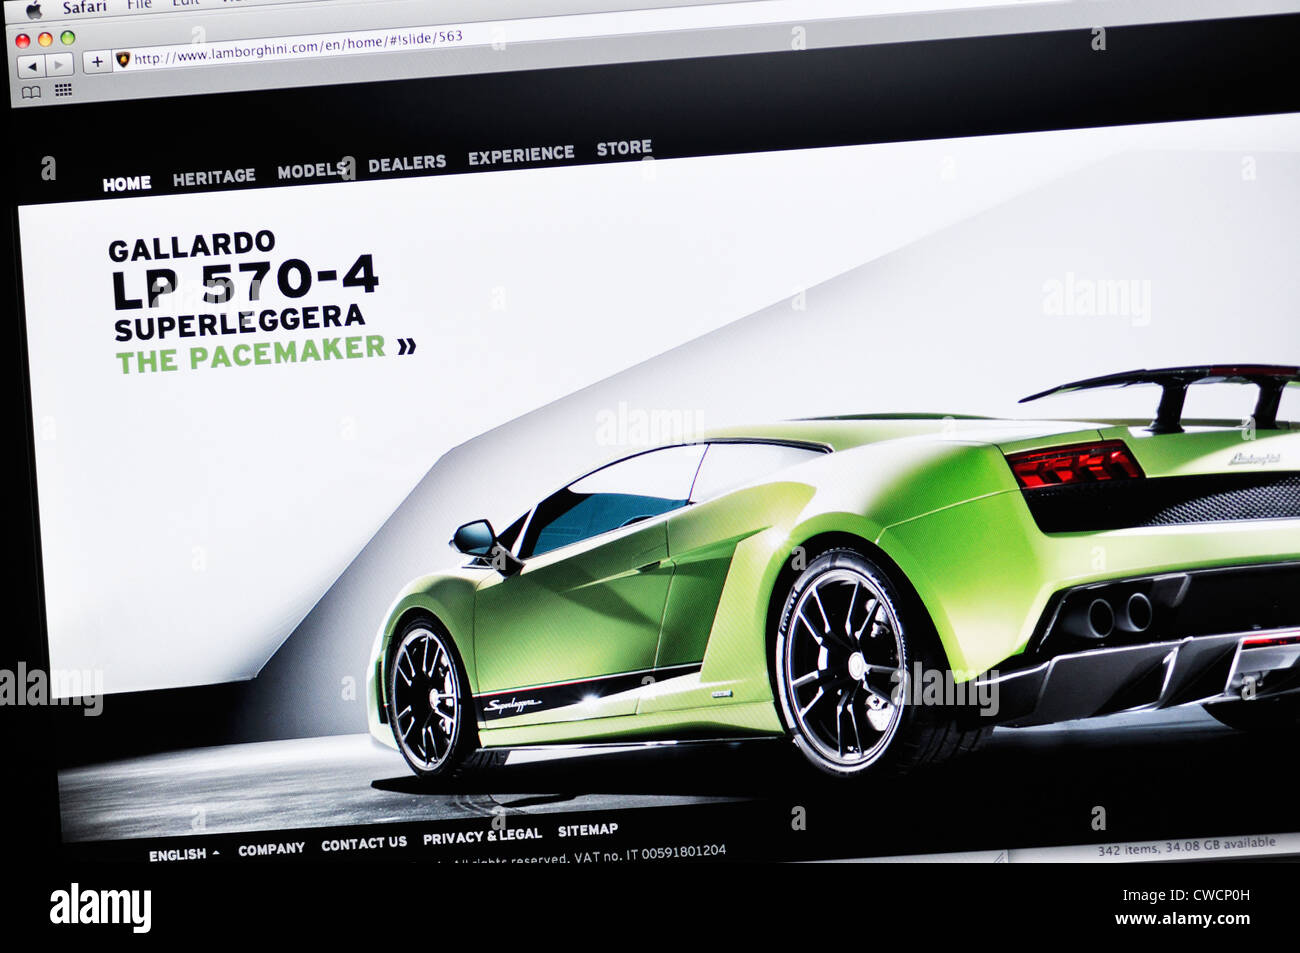 Lamborghini motor car website Stock Photo - Alamy